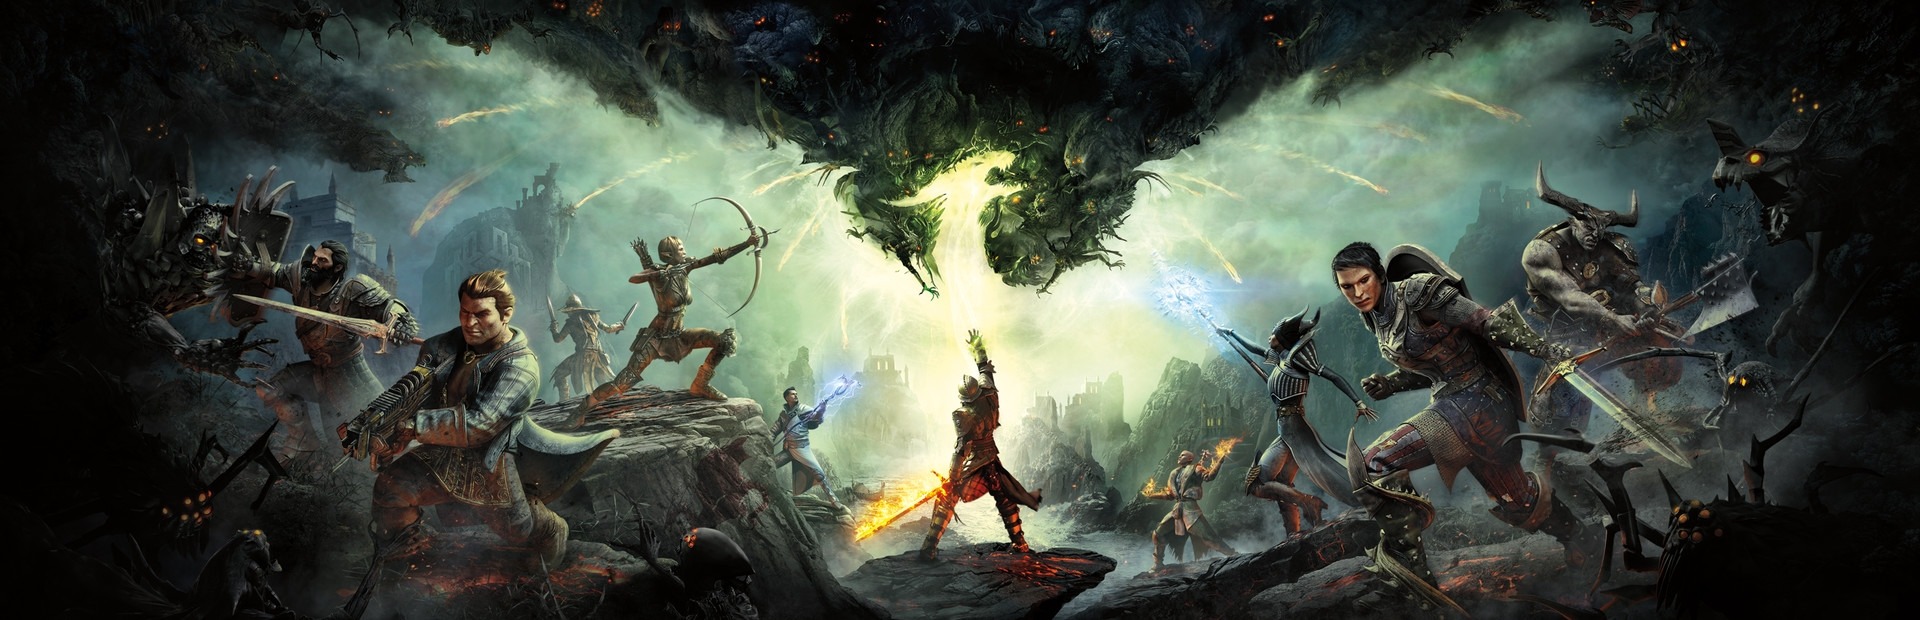 Banner Dragon Age: Inquisition - Fauces de Hakkon